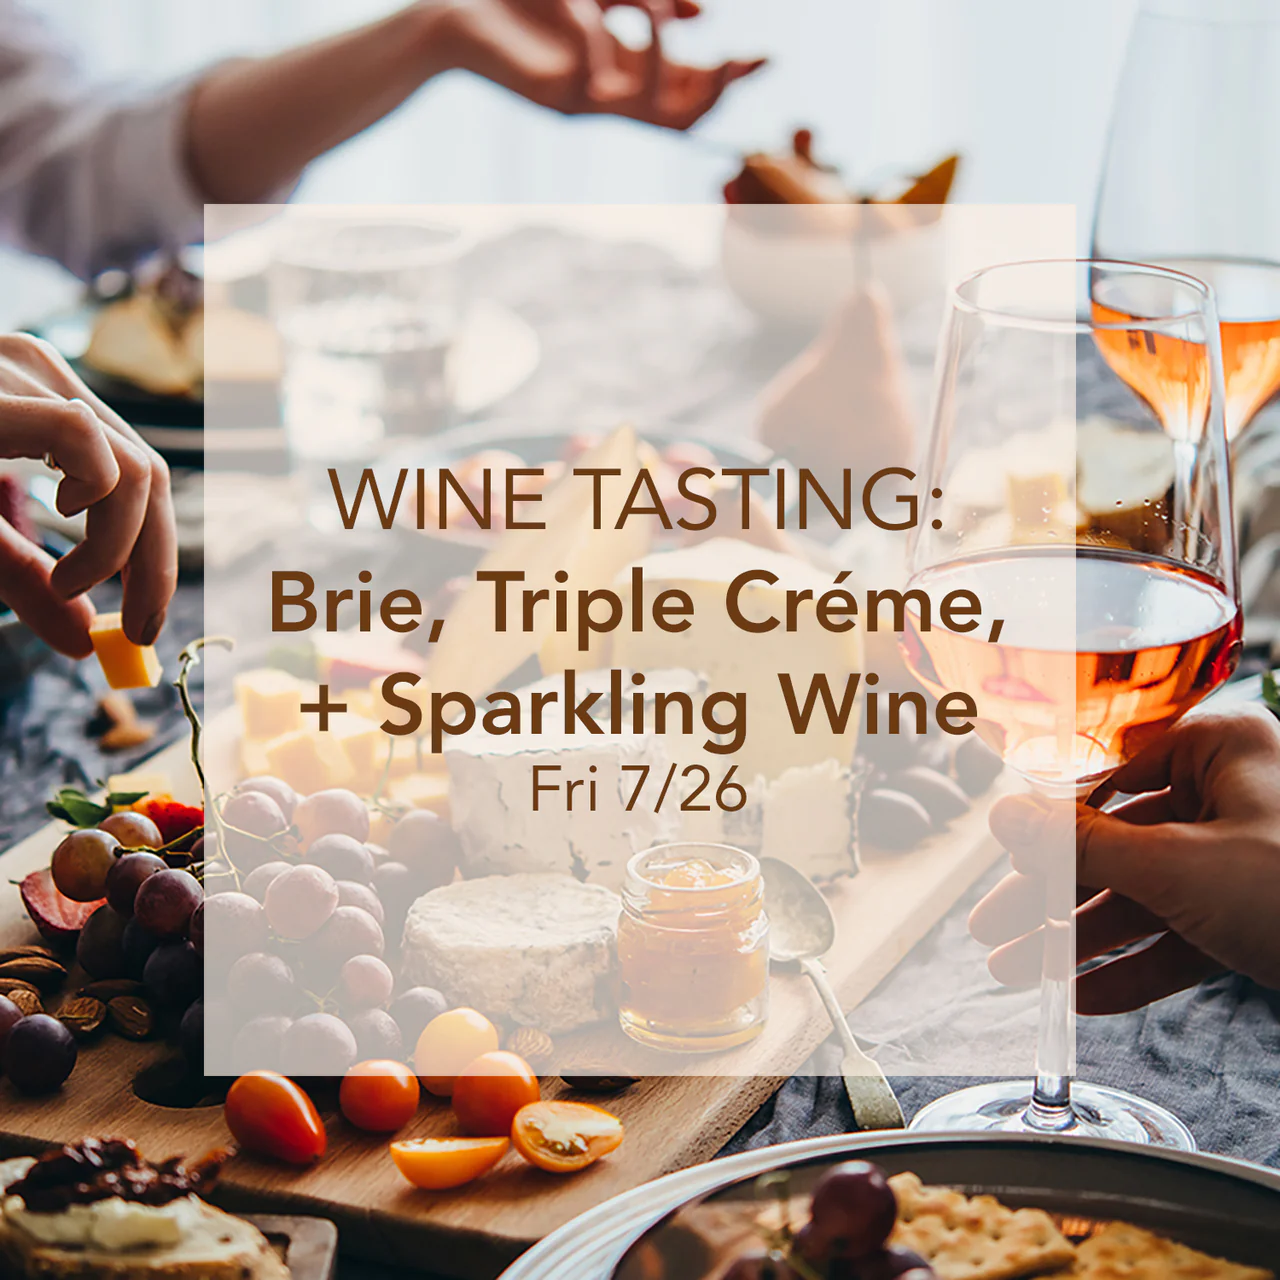 Brie, Triple Créme, + Sparkling Wine